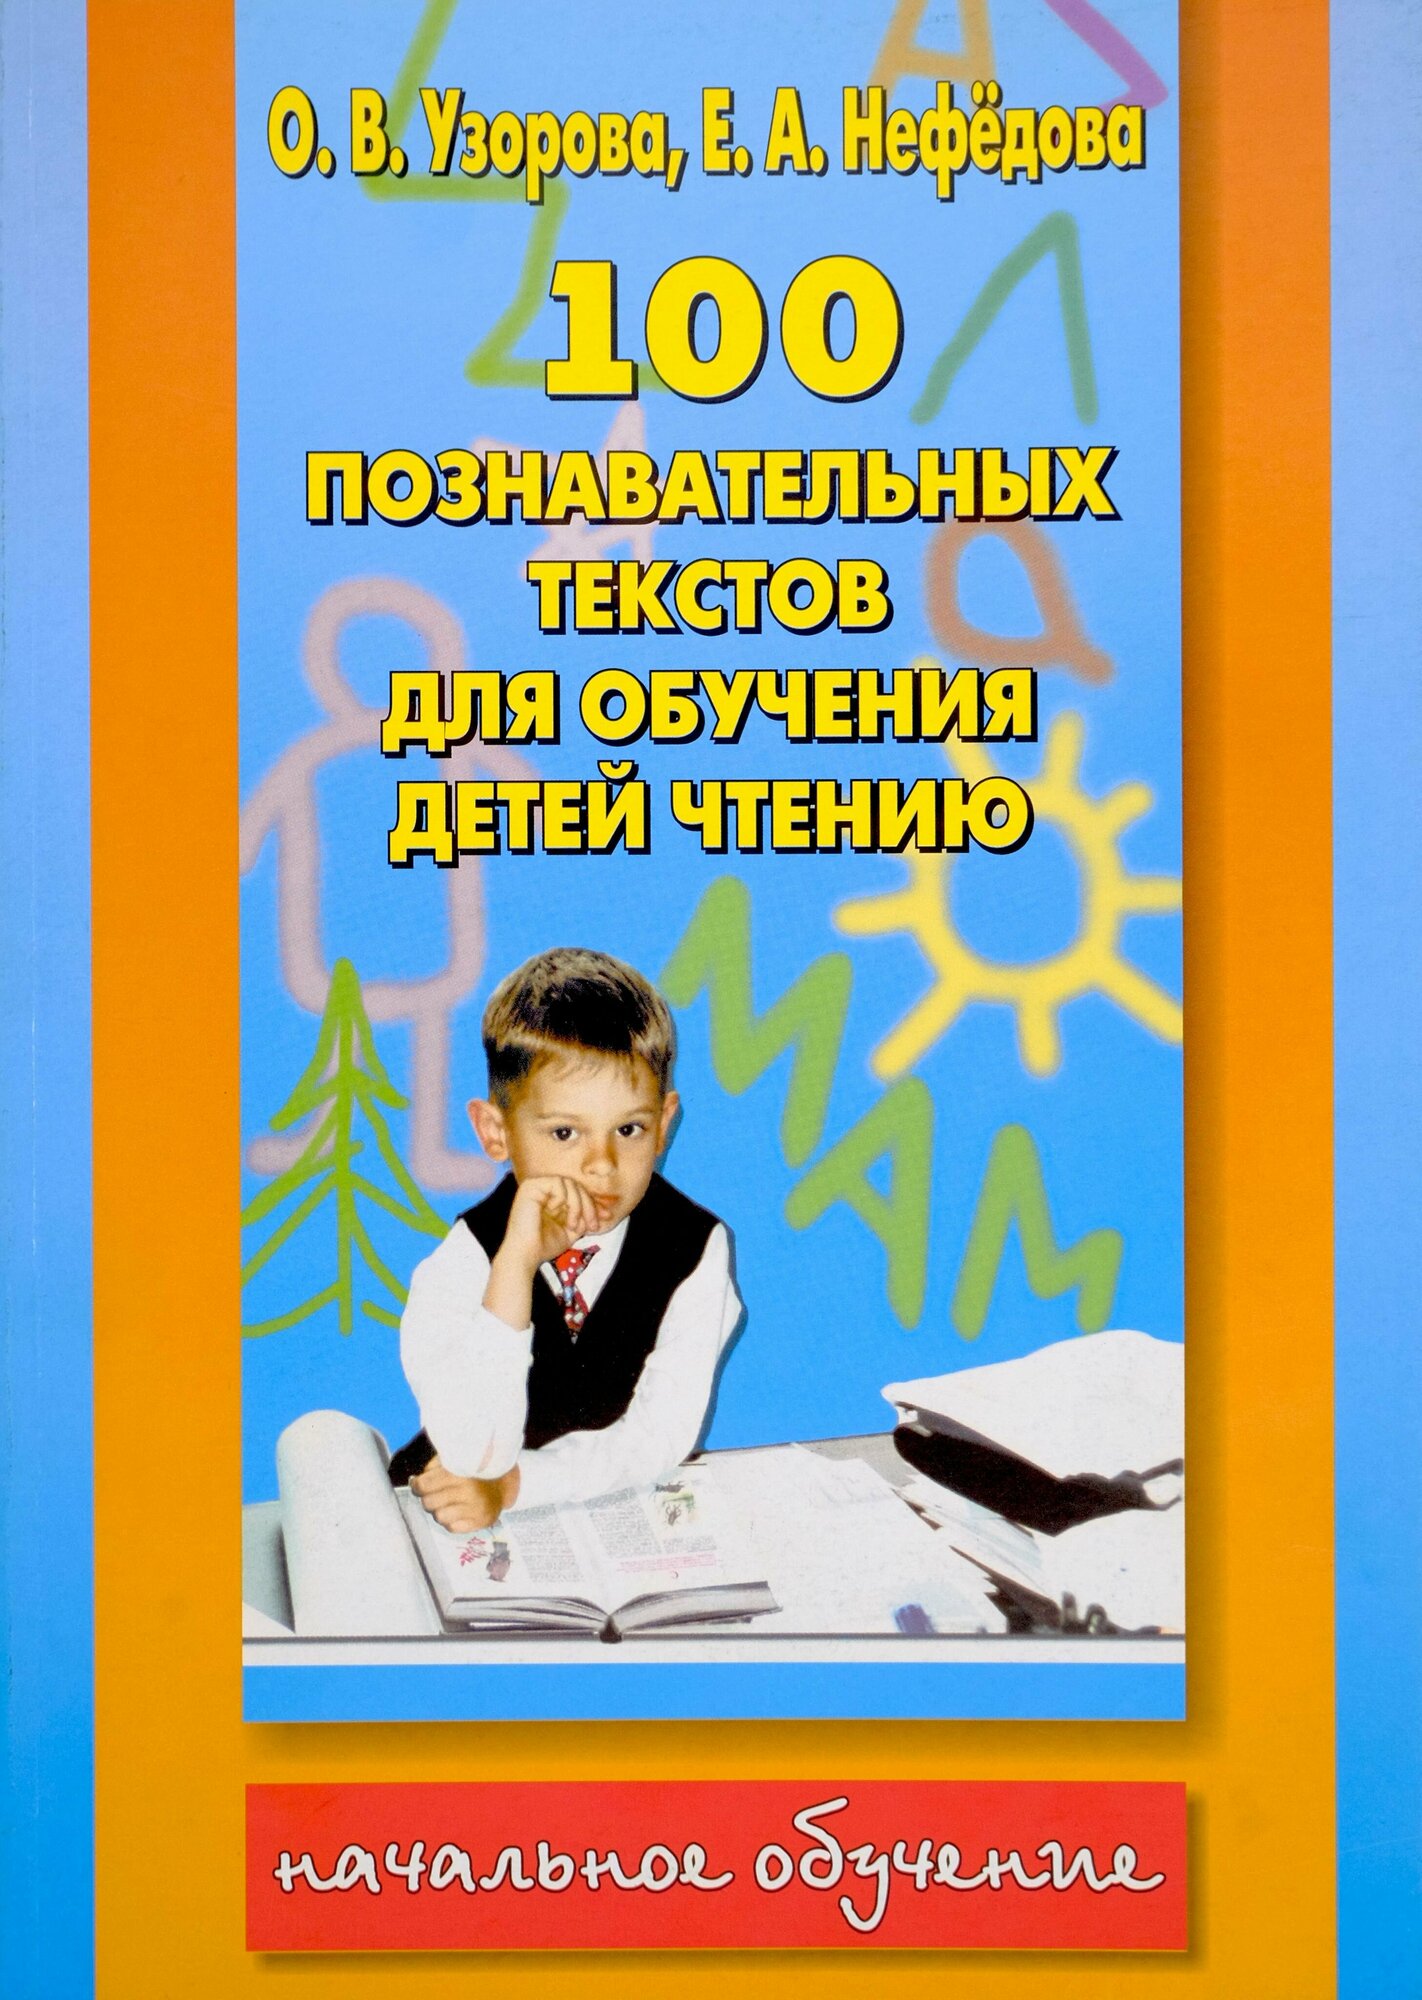 100 познавательных текстов для обучения детей чтению и подготовки детей к школе.